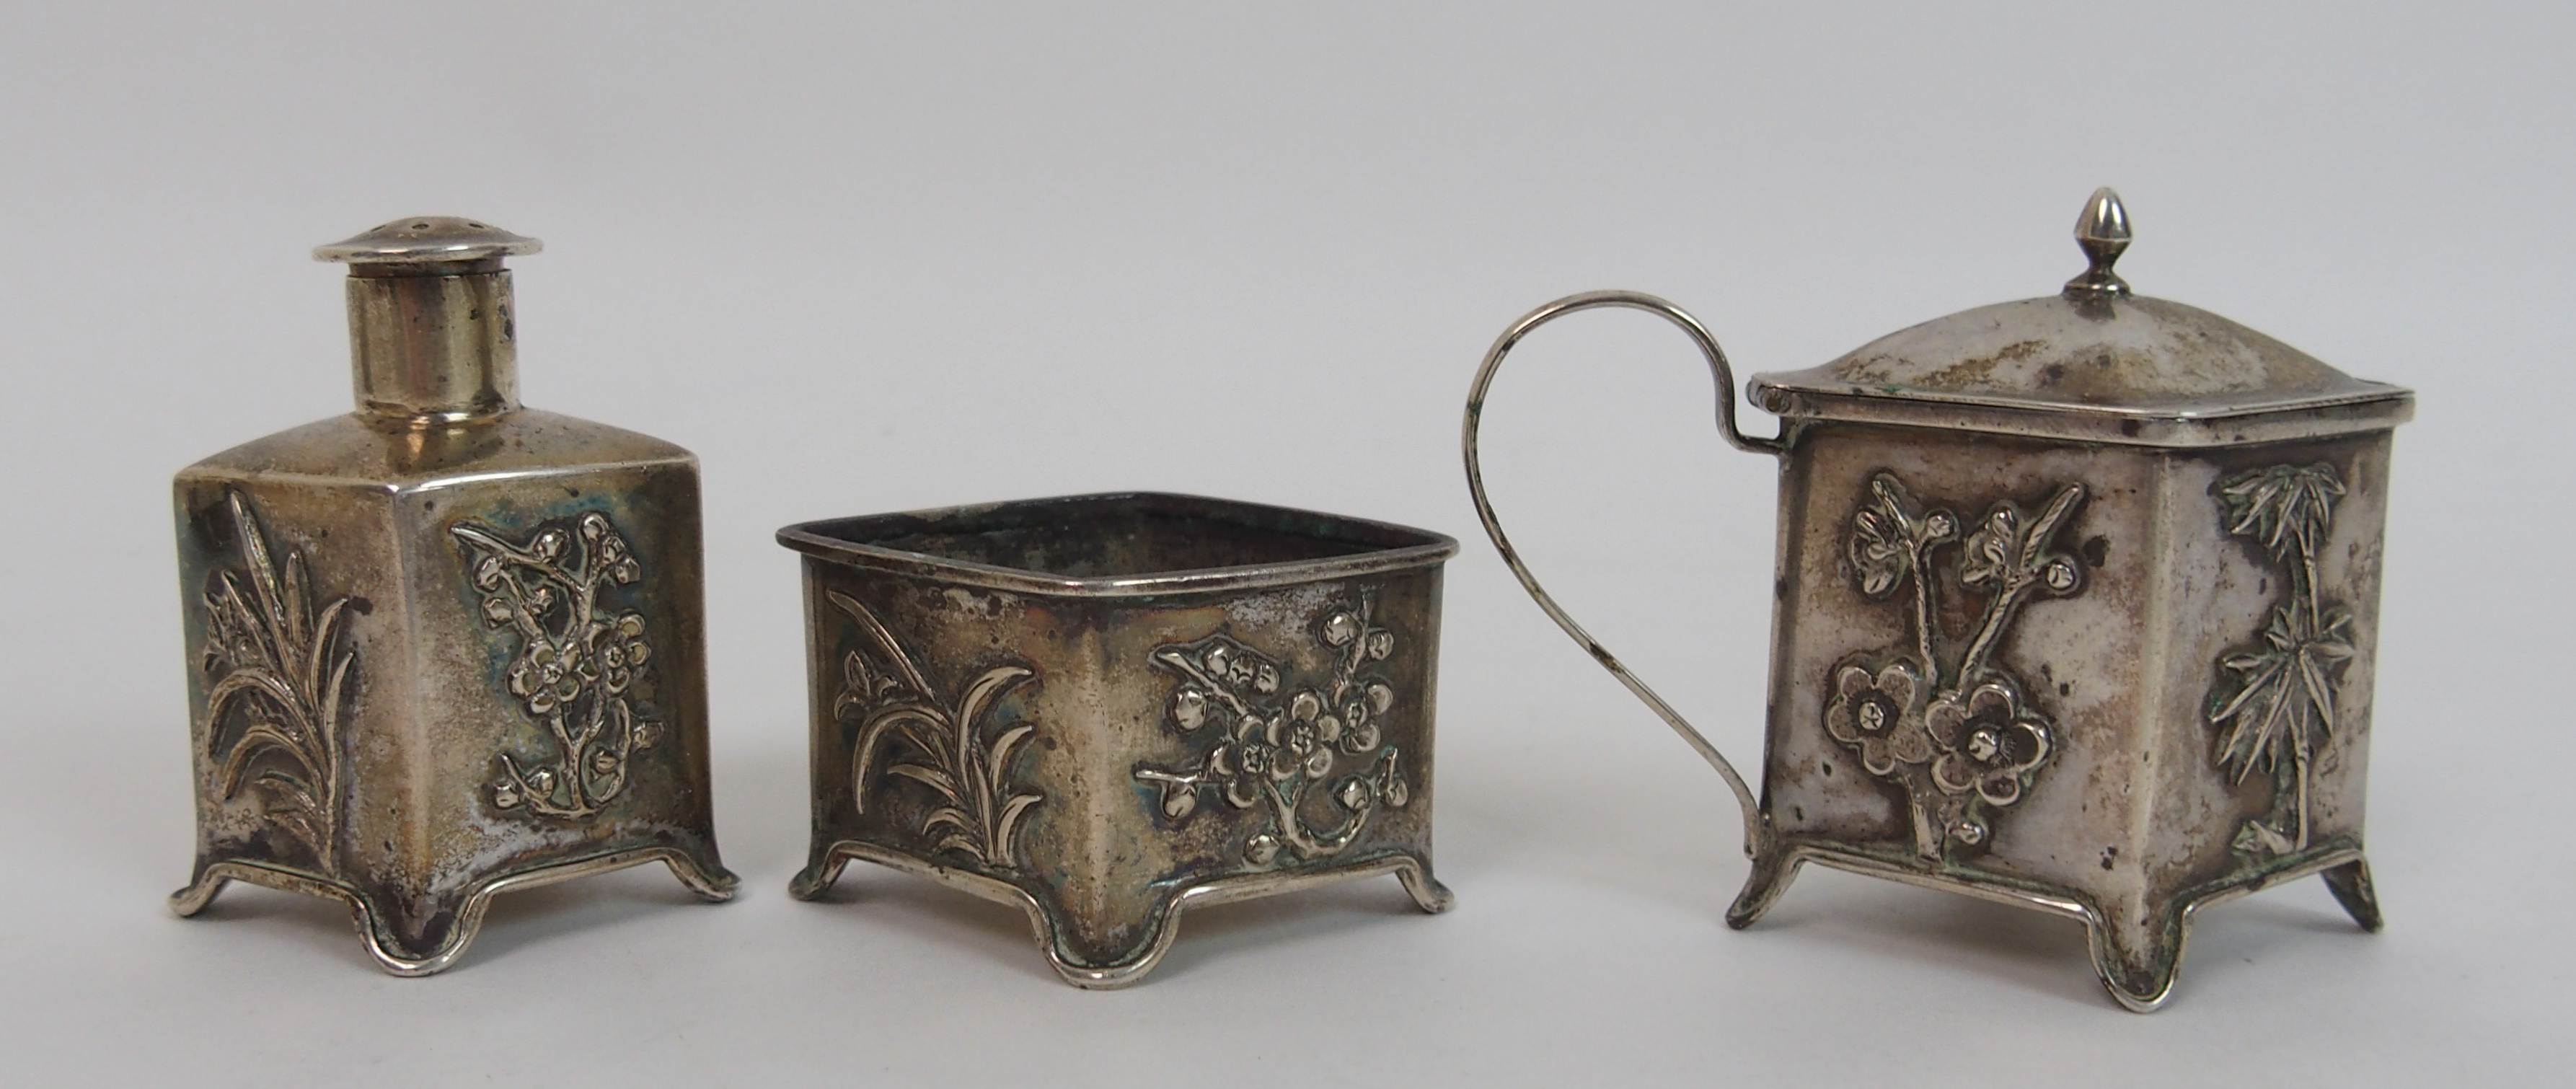 A Chinese silver cruet set cast with foliage comprising; salt cellar, pepper pot and mustard pot ( - Bild 3 aus 10